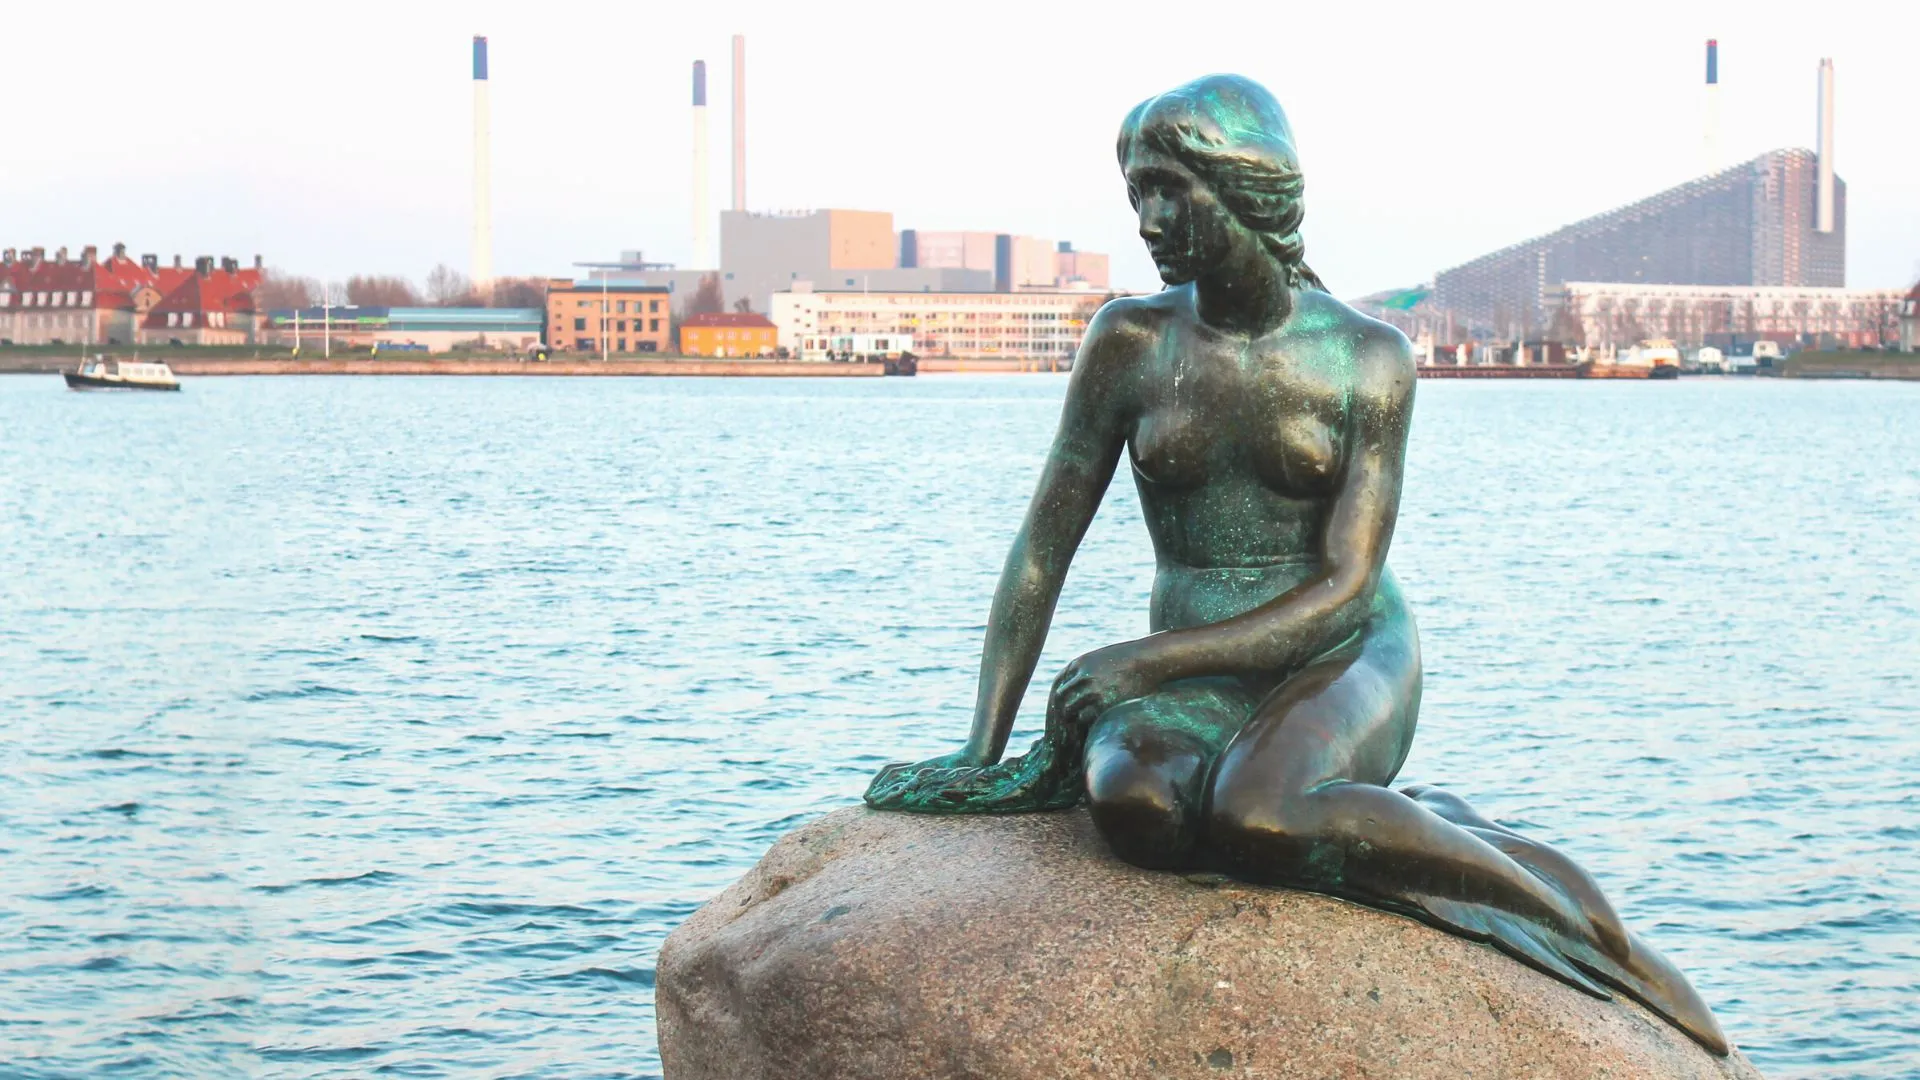 Little Mermaid Statue